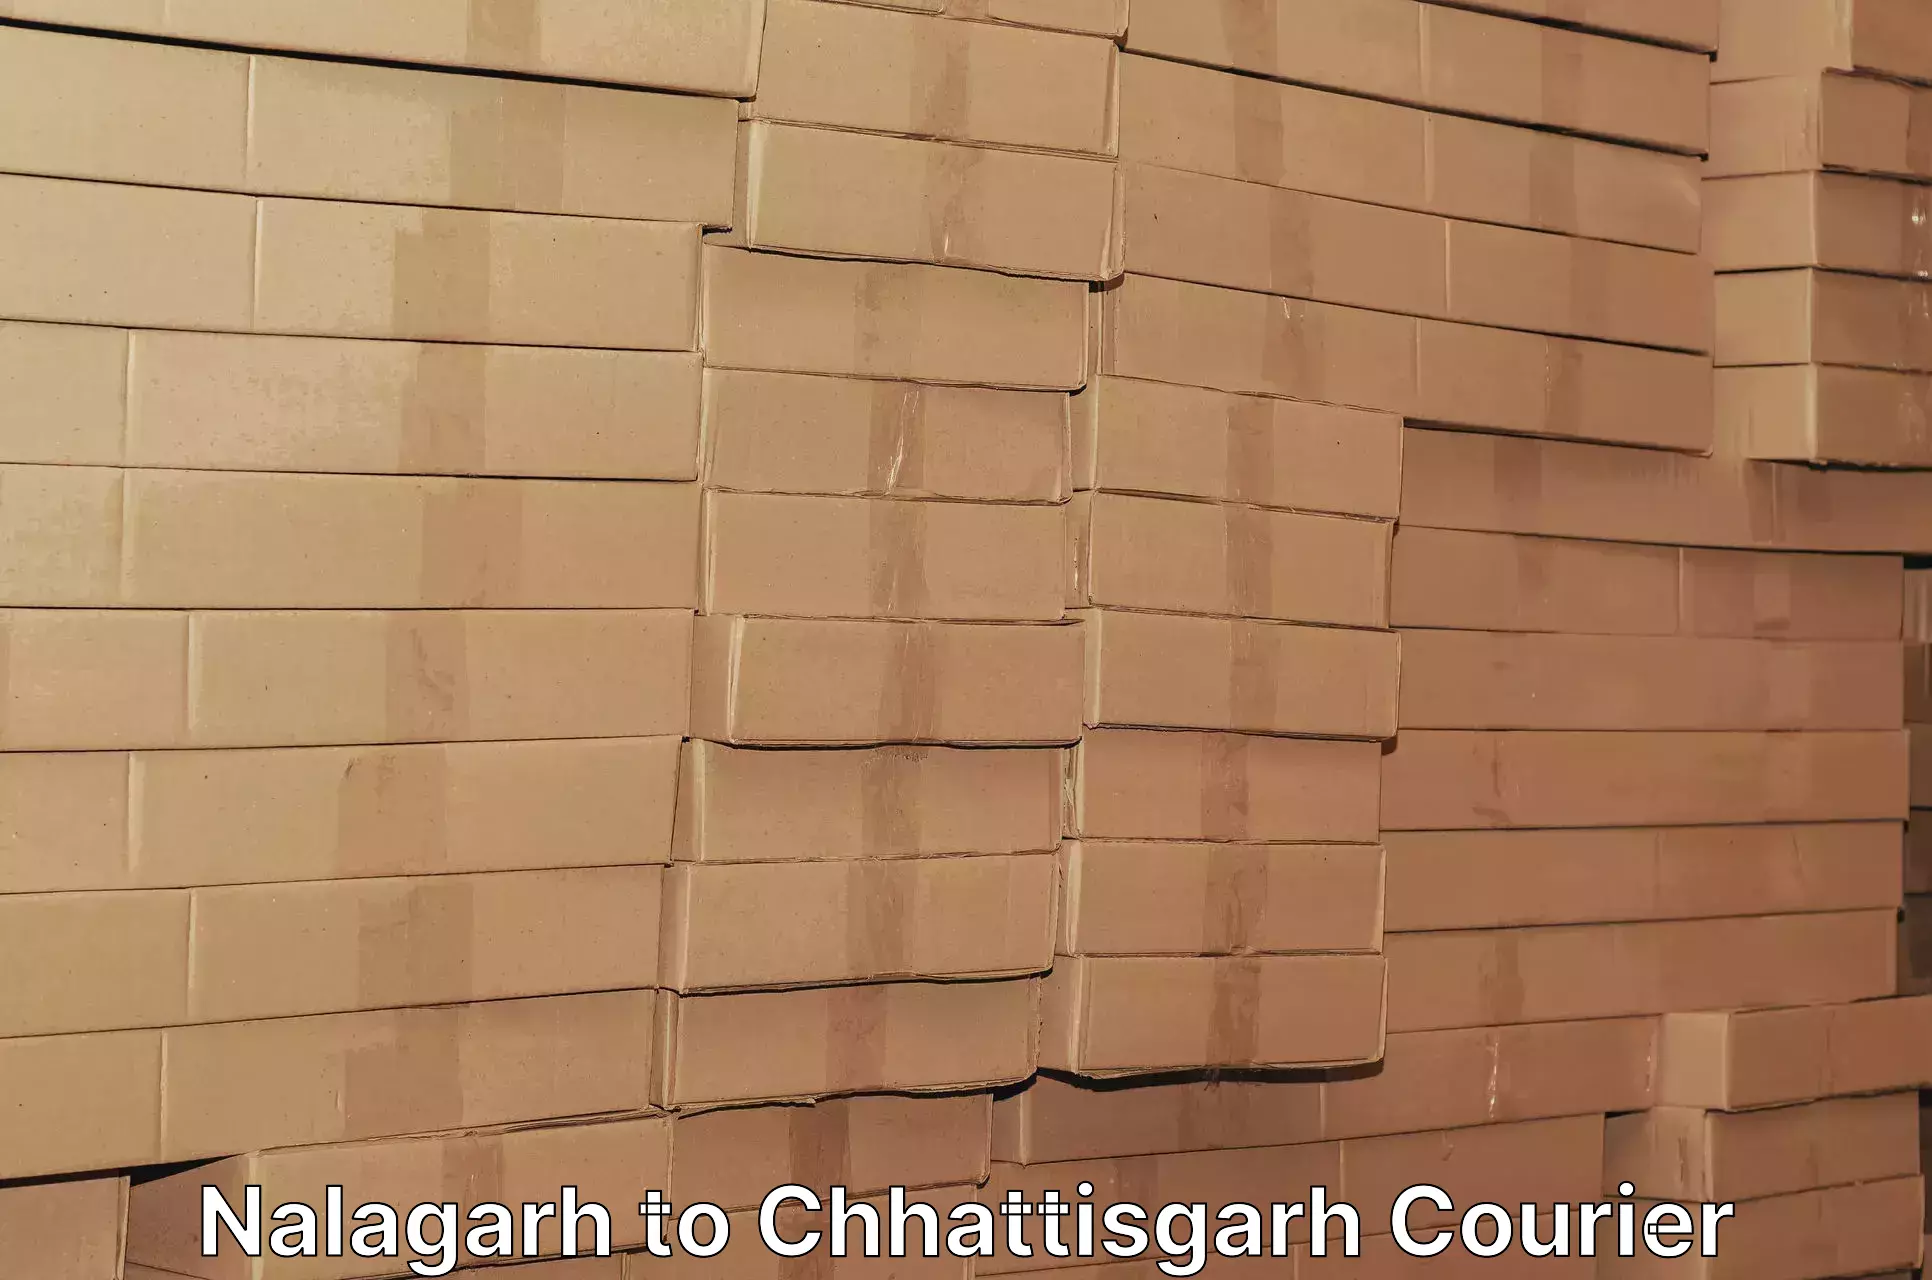 Cargo courier service Nalagarh to Dhamtari